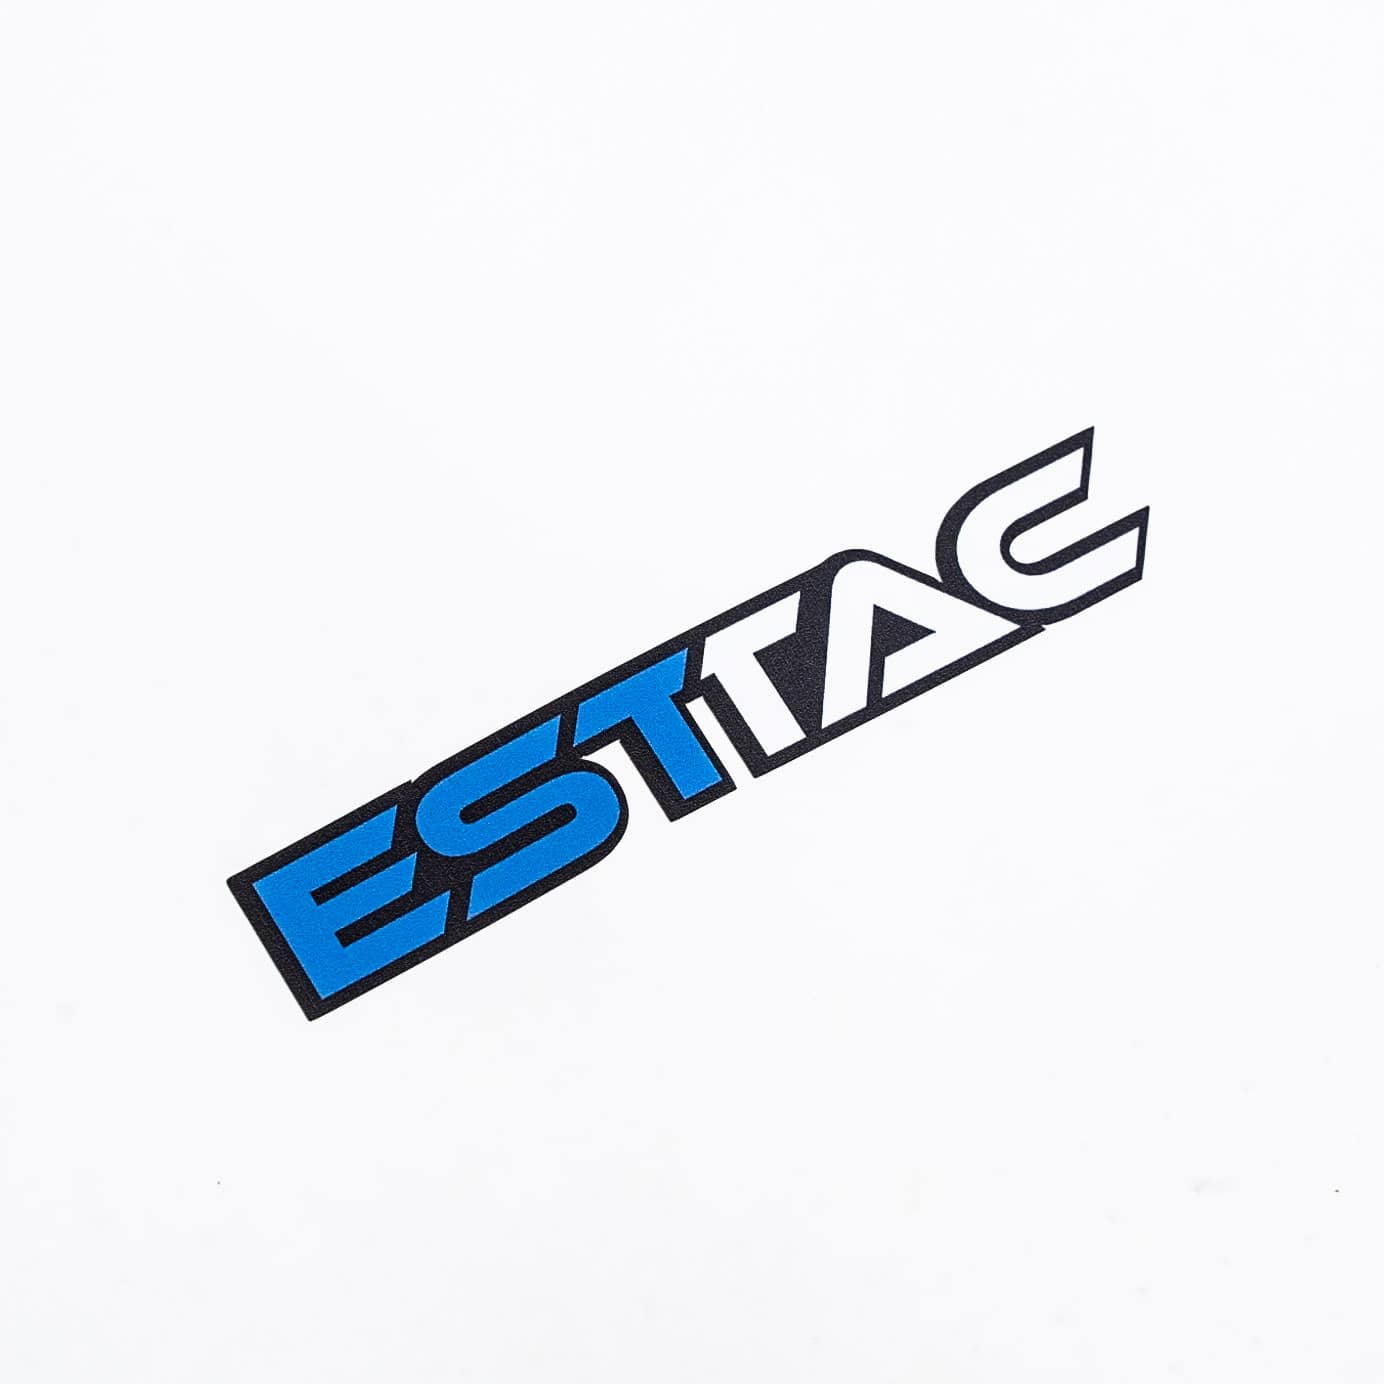 ESTTAC Sticker